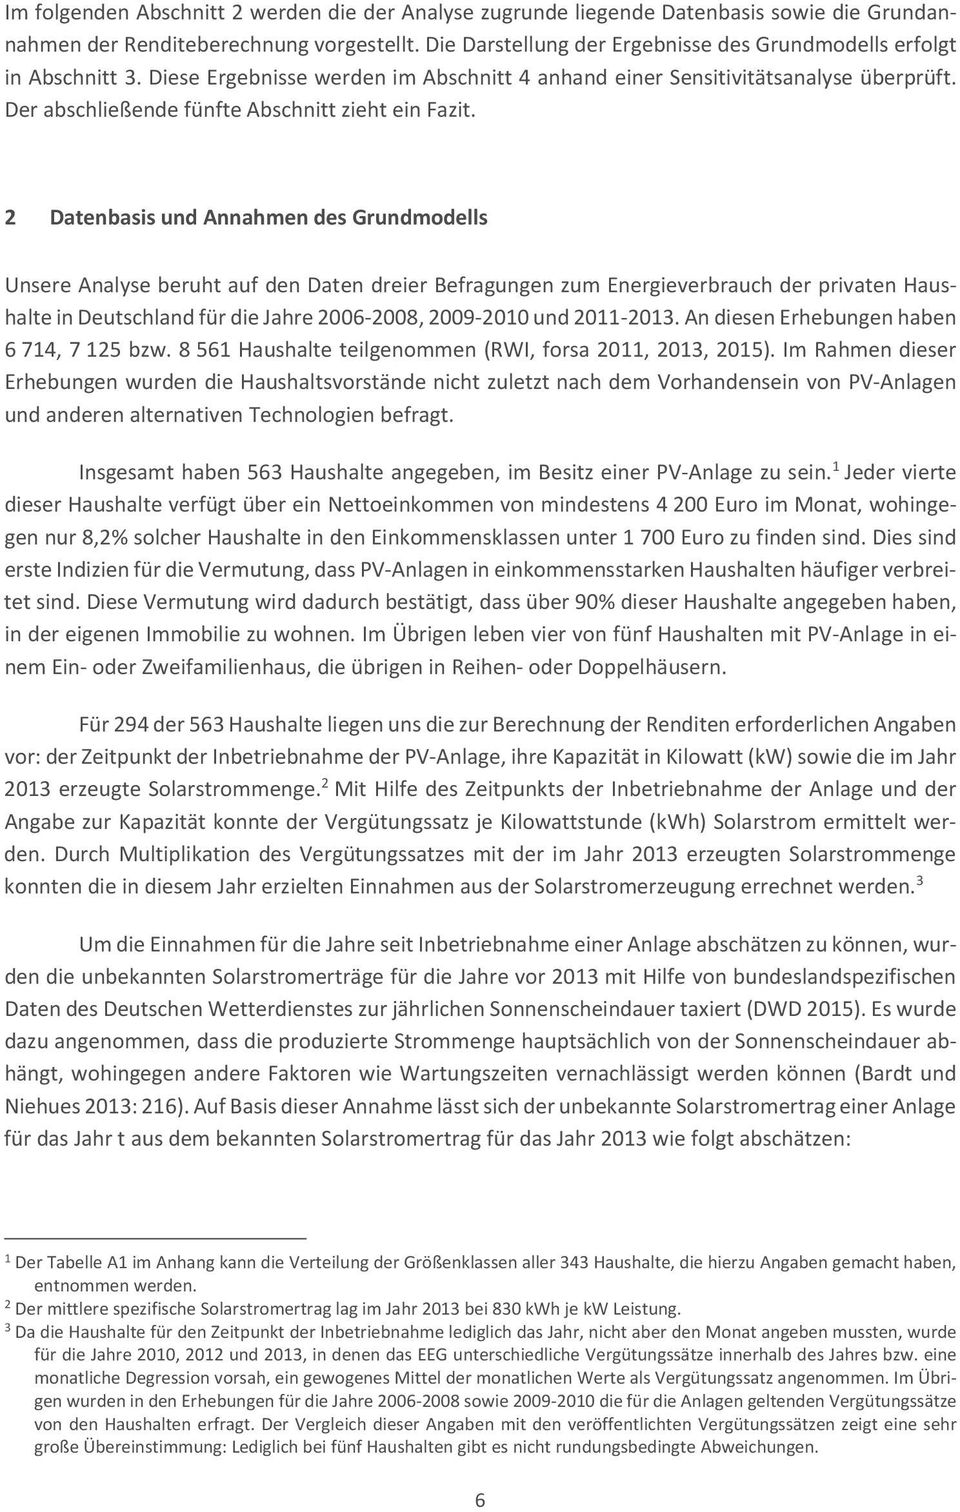 2 DatenbasisundAnnahmendesGrundmodells UnsereAnalyseberuhtaufdenDatendreierBefragungenzumEnergieverbrauchderprivatenHaus halteindeutschlandfürdiejahre20062008,20092010und20112013.